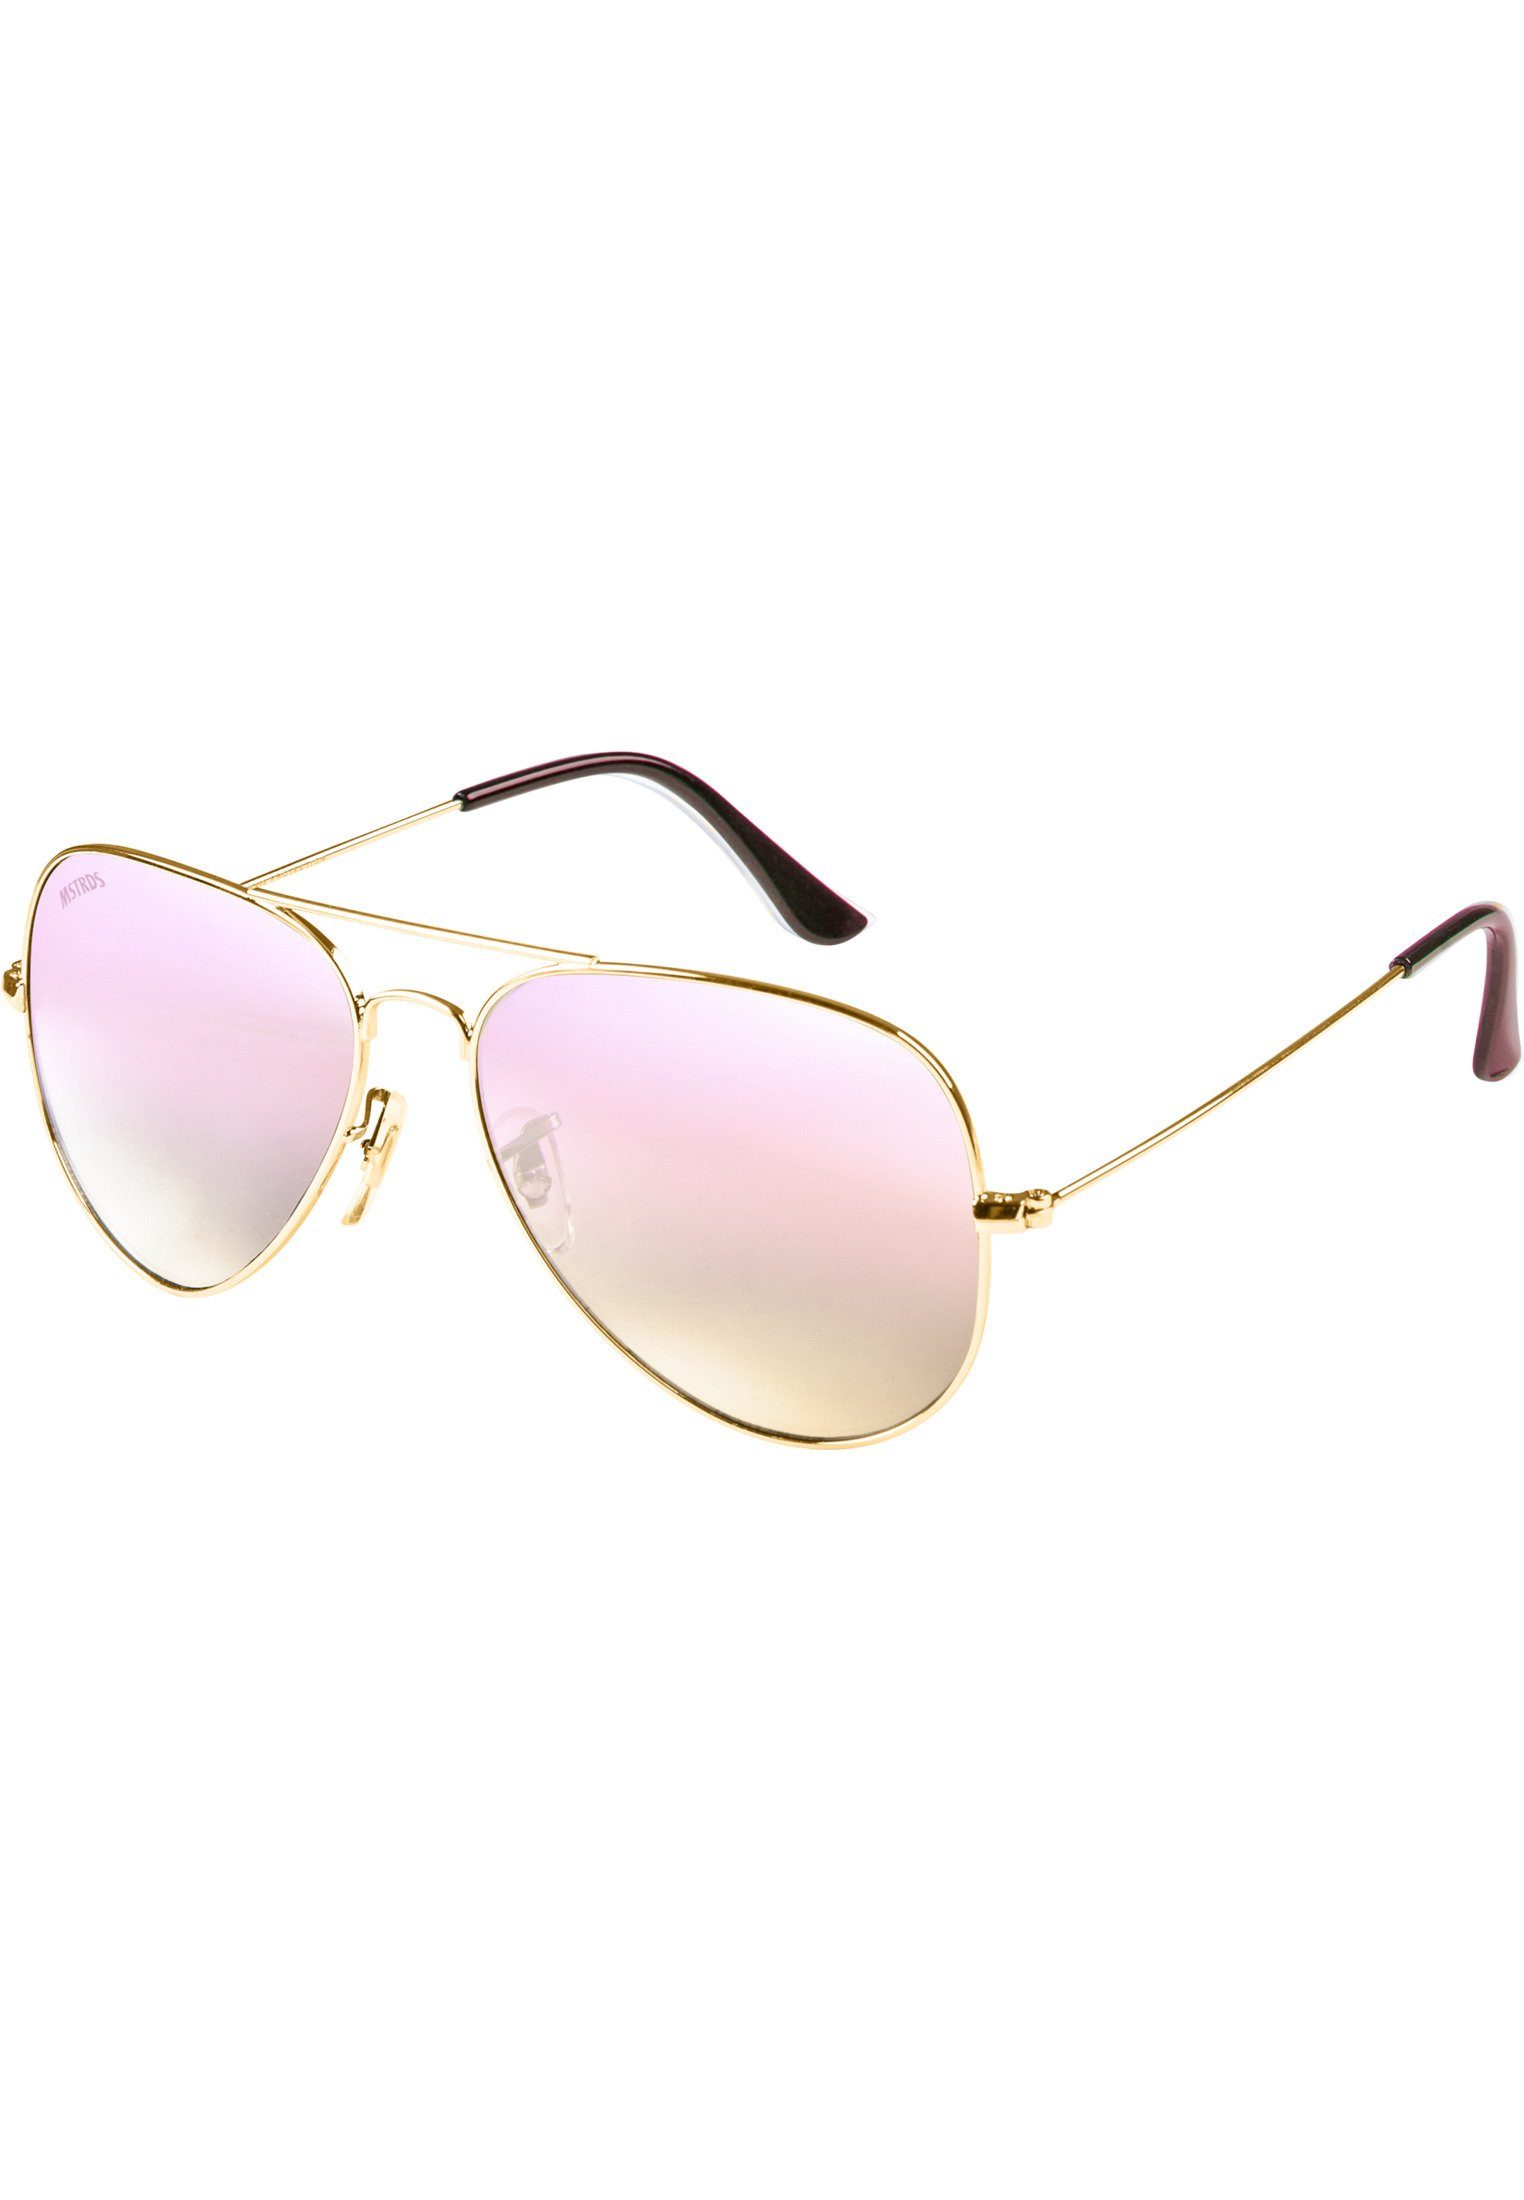 MSTRDS PureAv Sunglasses gold/rosé Accessoires Sonnenbrille Youth